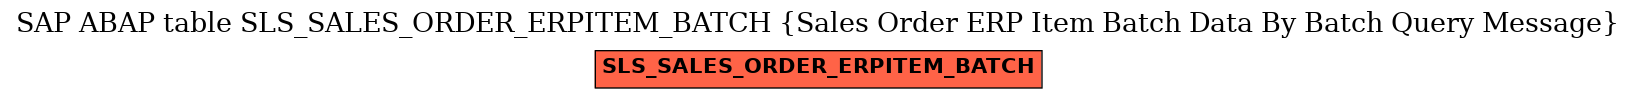 E-R Diagram for table SLS_SALES_ORDER_ERPITEM_BATCH (Sales Order ERP Item Batch Data By Batch Query Message)